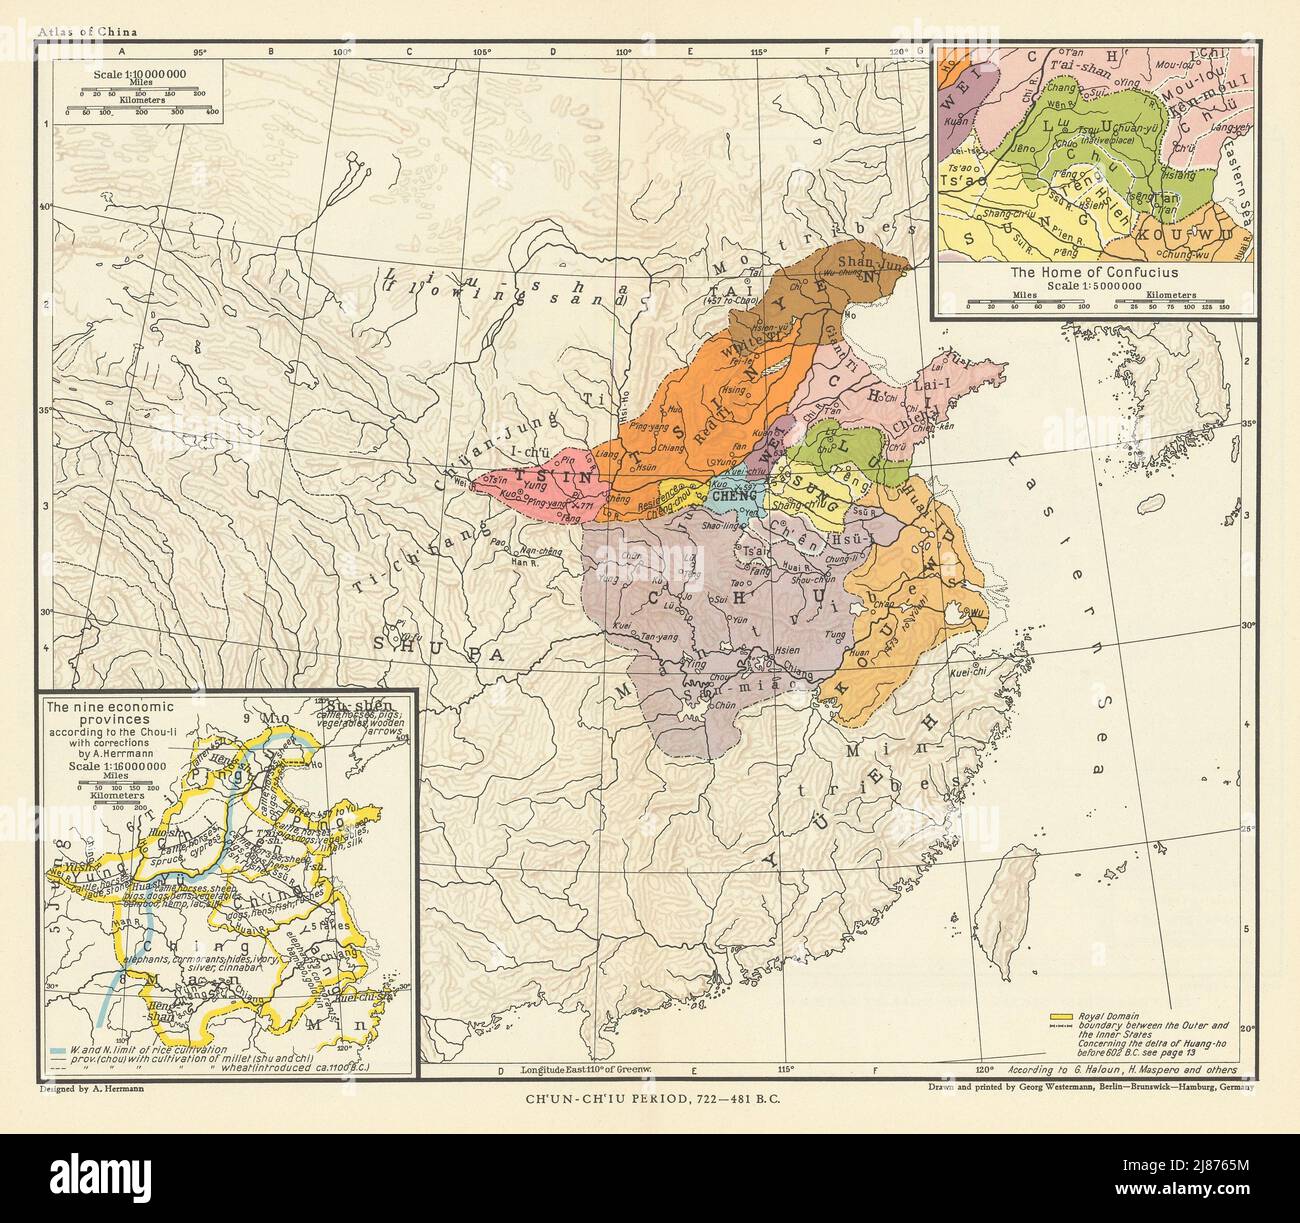 Cina Primavera & Autunno periodo 722-481 AC. Confucio. 9 province 1935 vecchia mappa Foto Stock